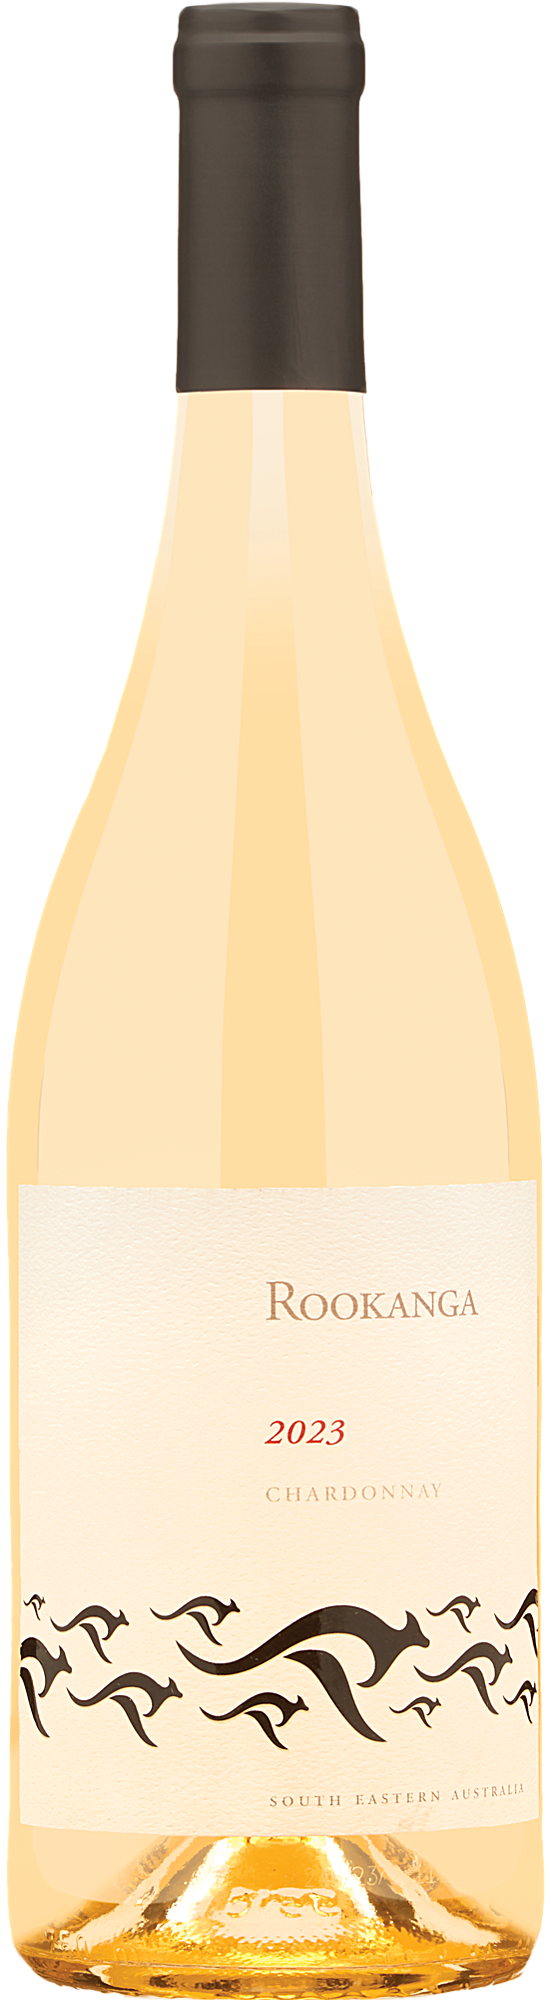 2023 Rookanga Chardonnay